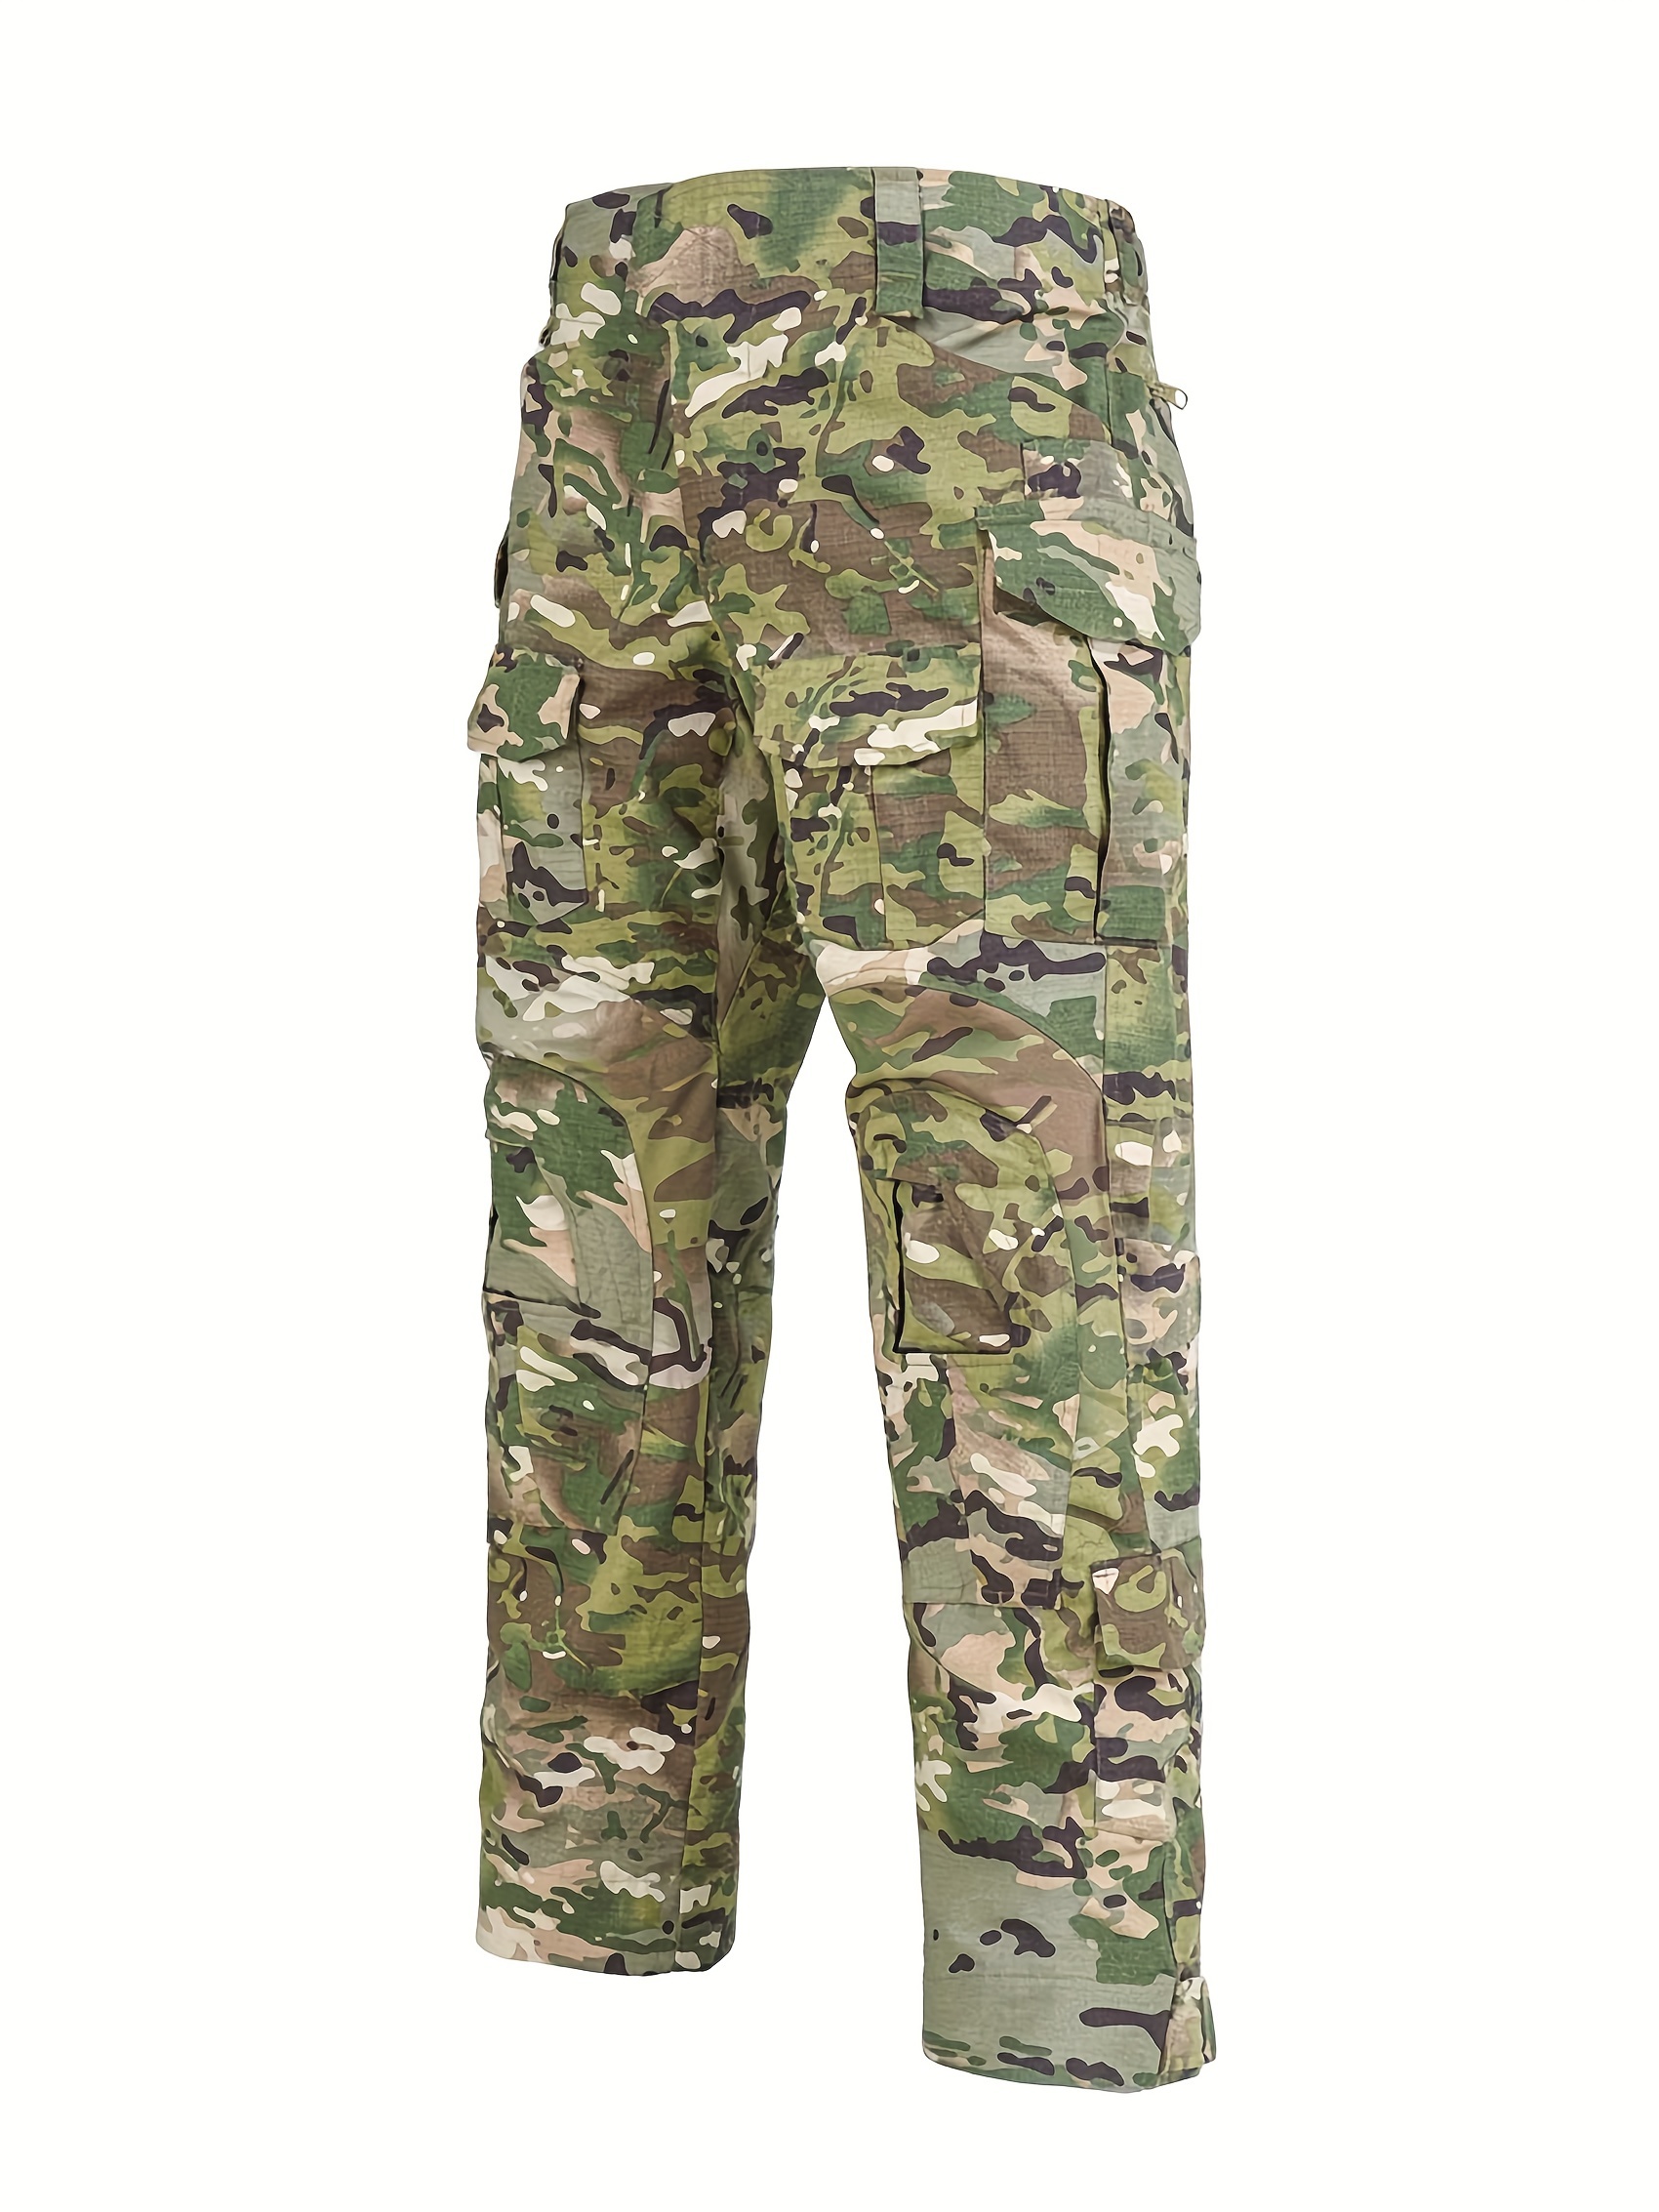 Tactical Pants Military Camouflage Pants Men Trip Trousers Army Combat Cs  Pants Men Tactico Camo Militar Clothing Pantalon Homme